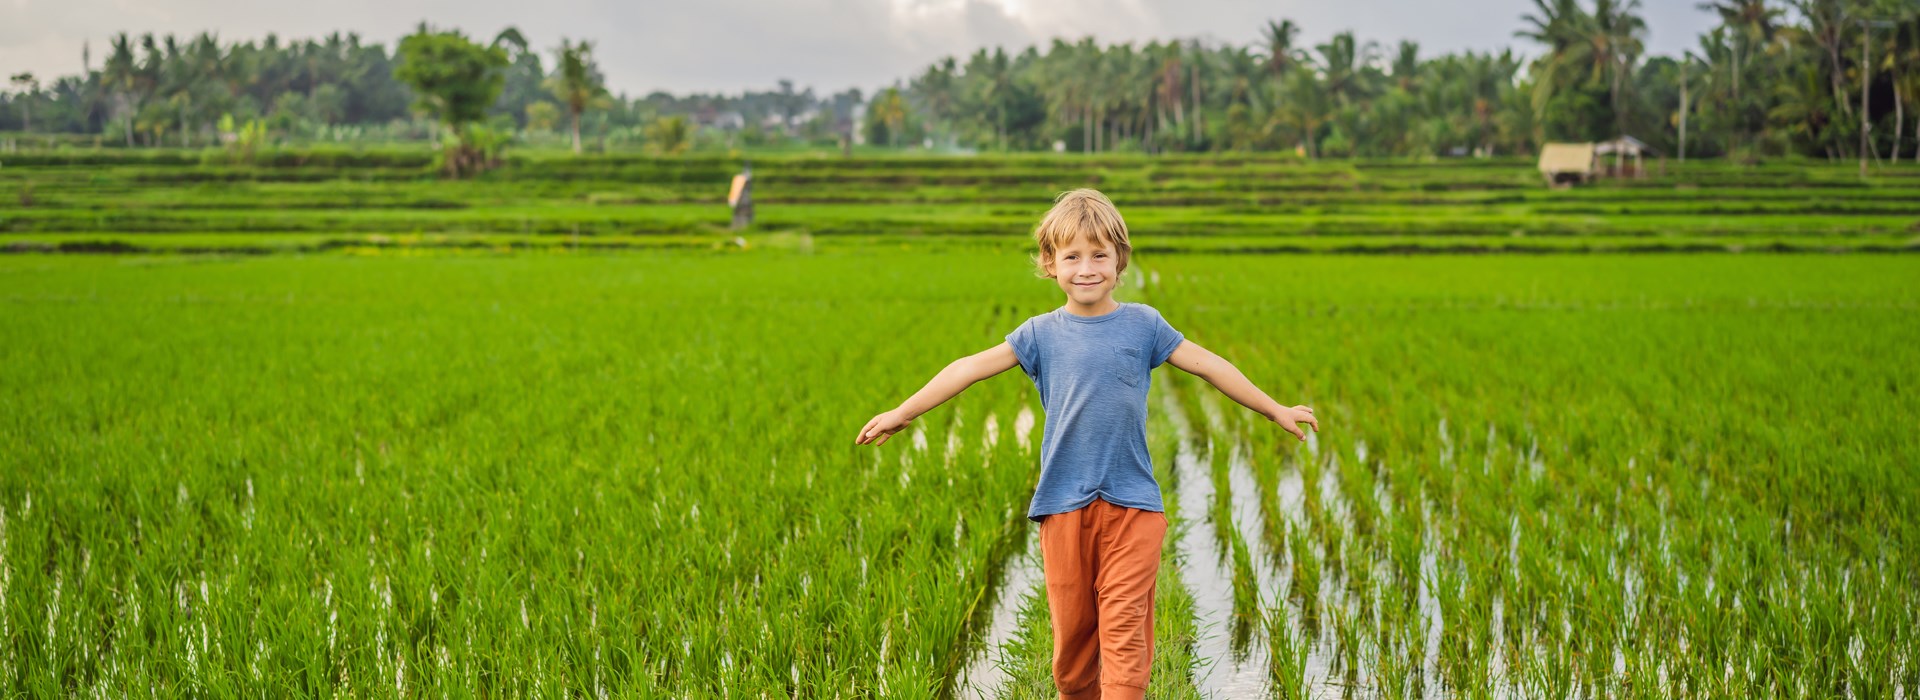 circuit thailande famille rizière